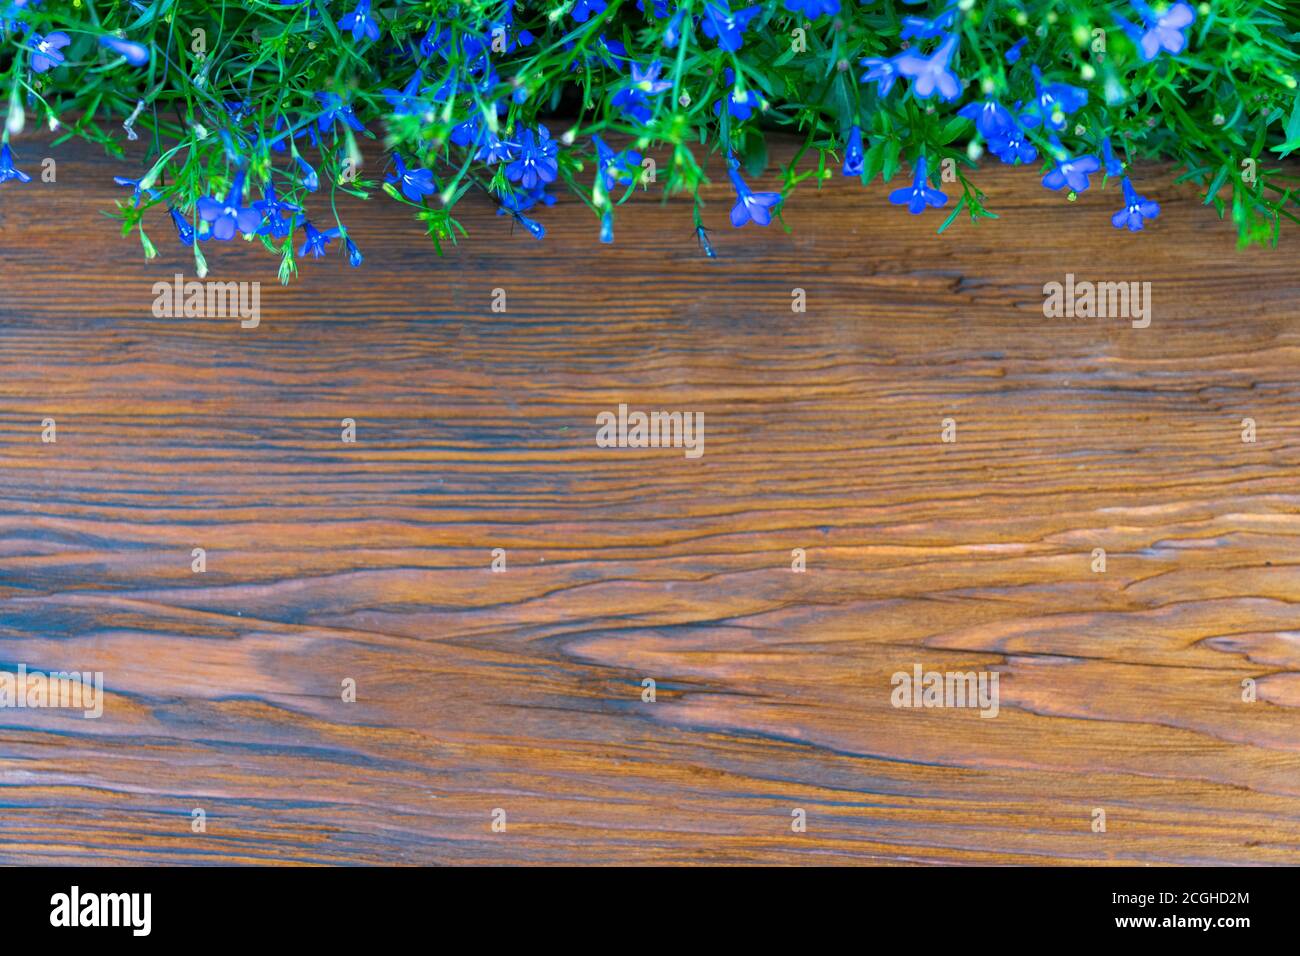 Panneau en bois gaufré encadré de fleurs bleues Banque D'Images